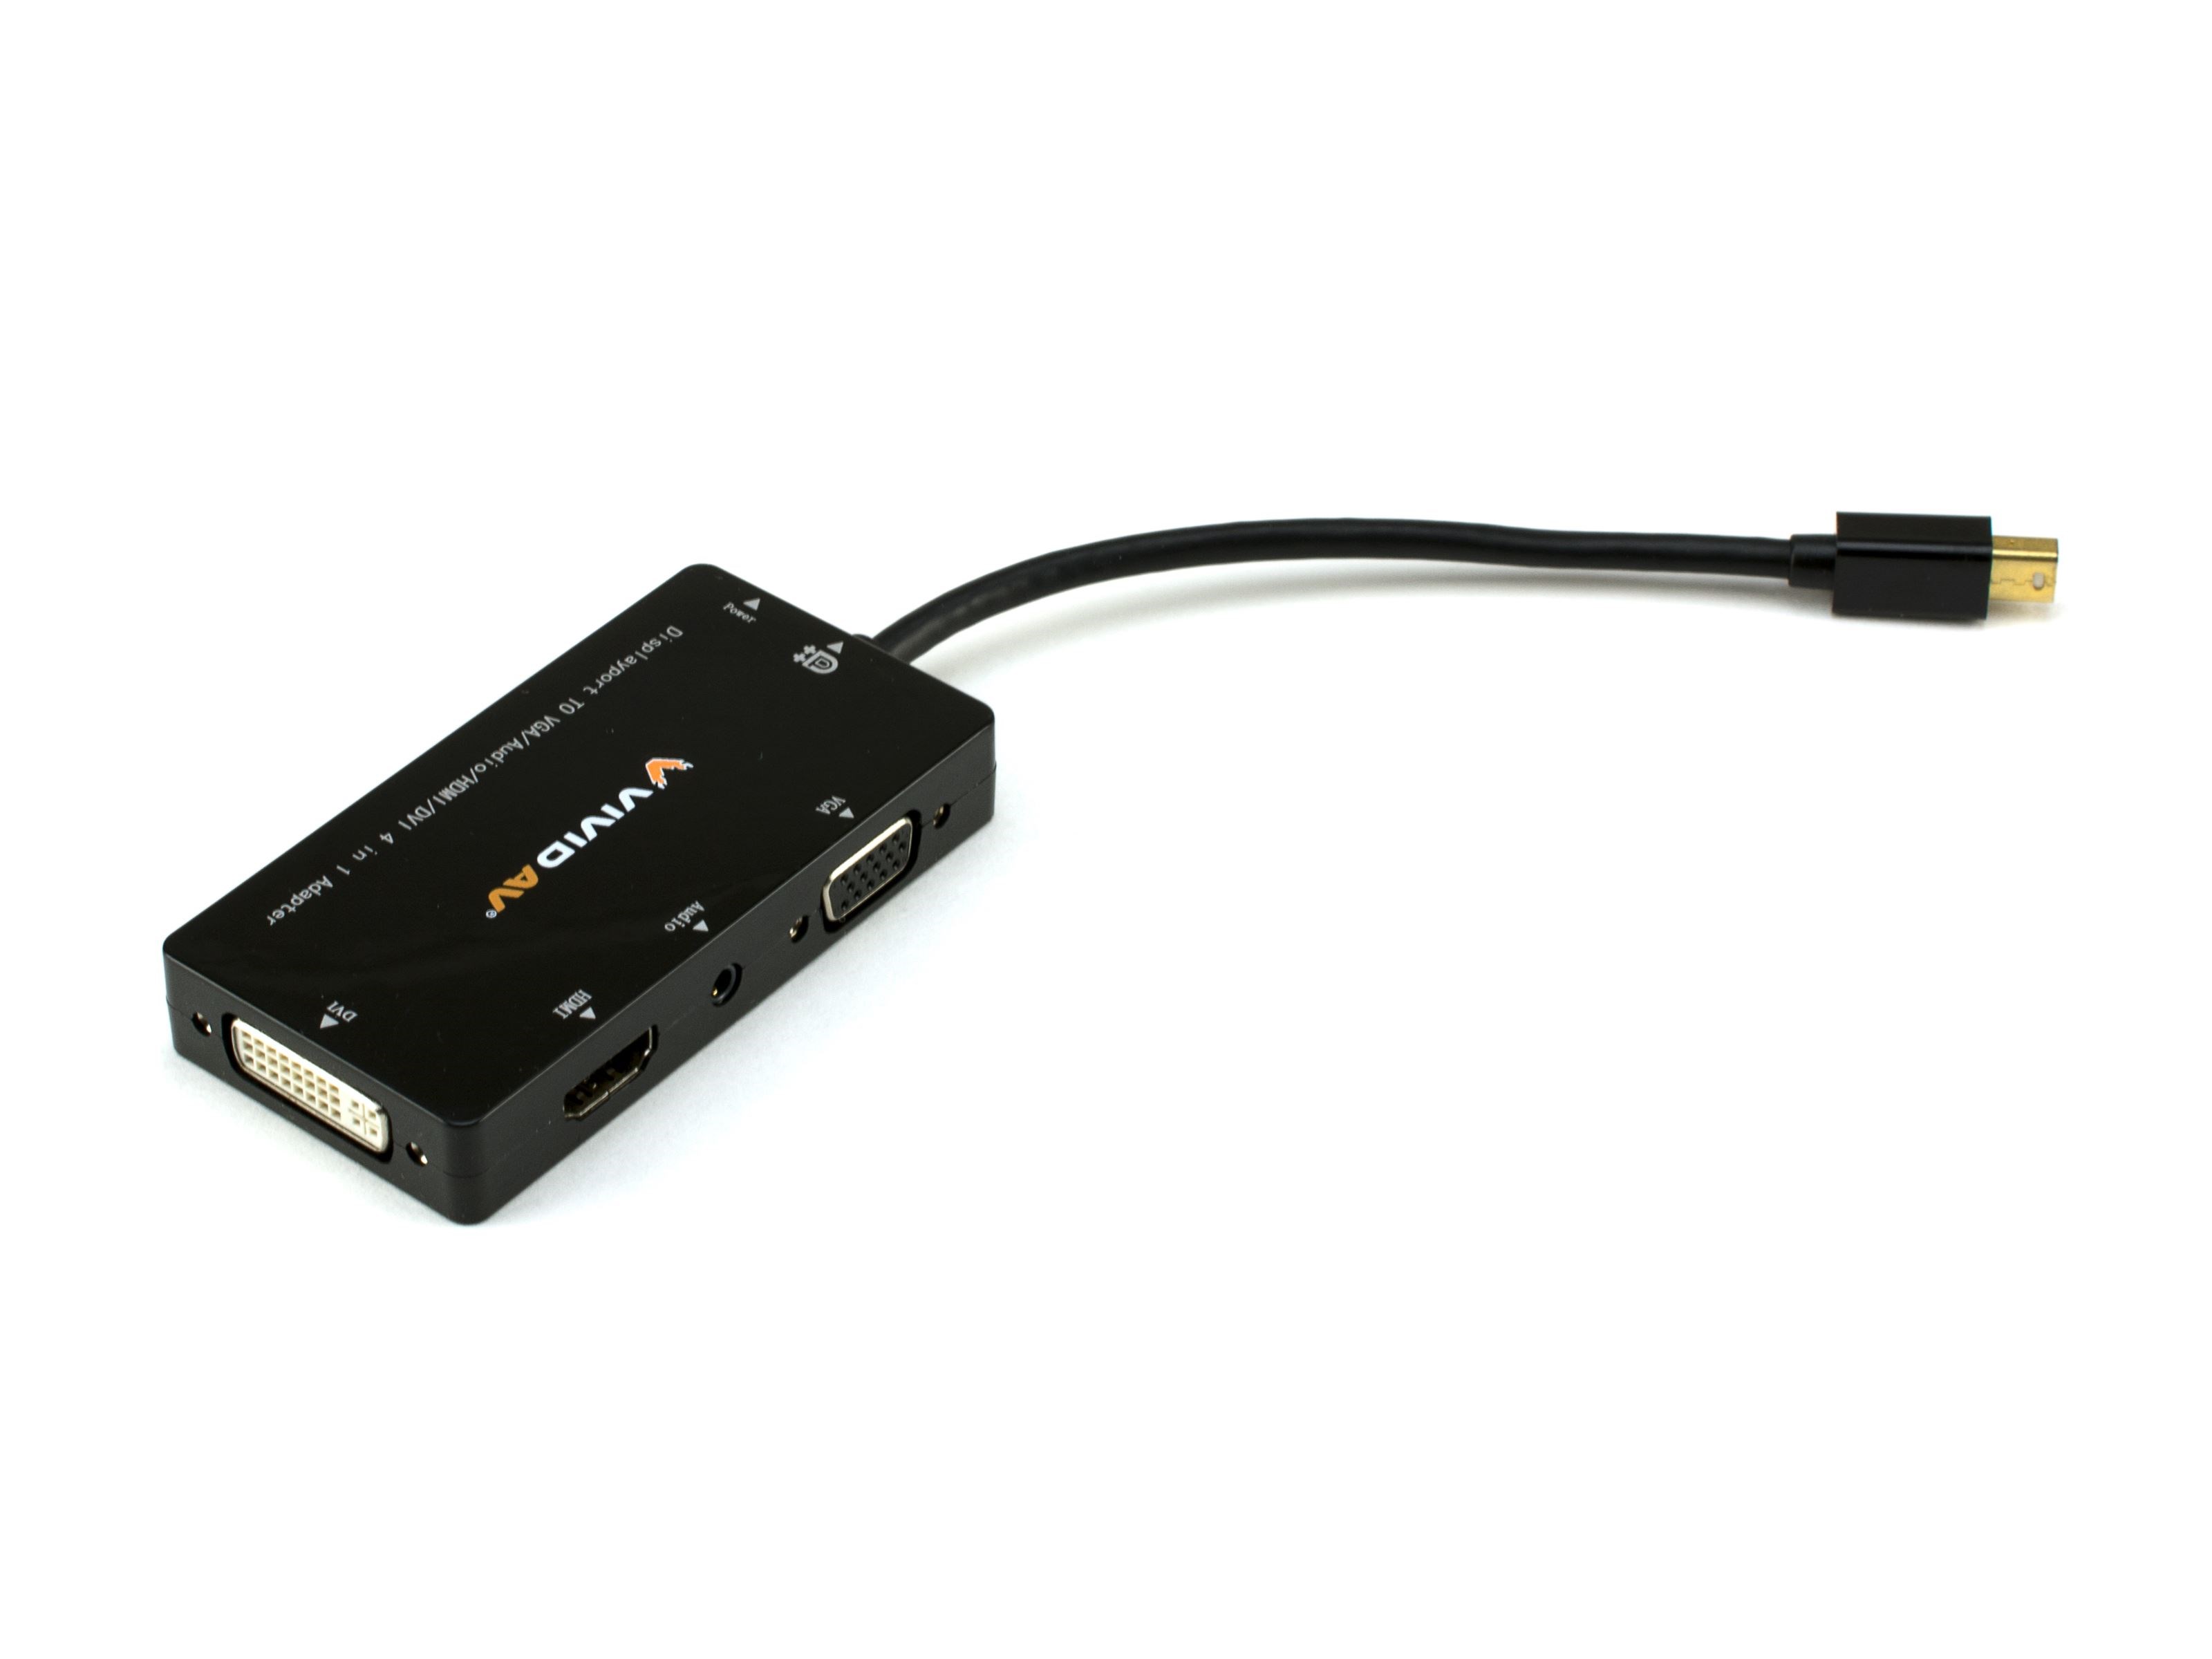 Adaptador Multipuesto Mini Display Port A HDMI/VGA/DVI